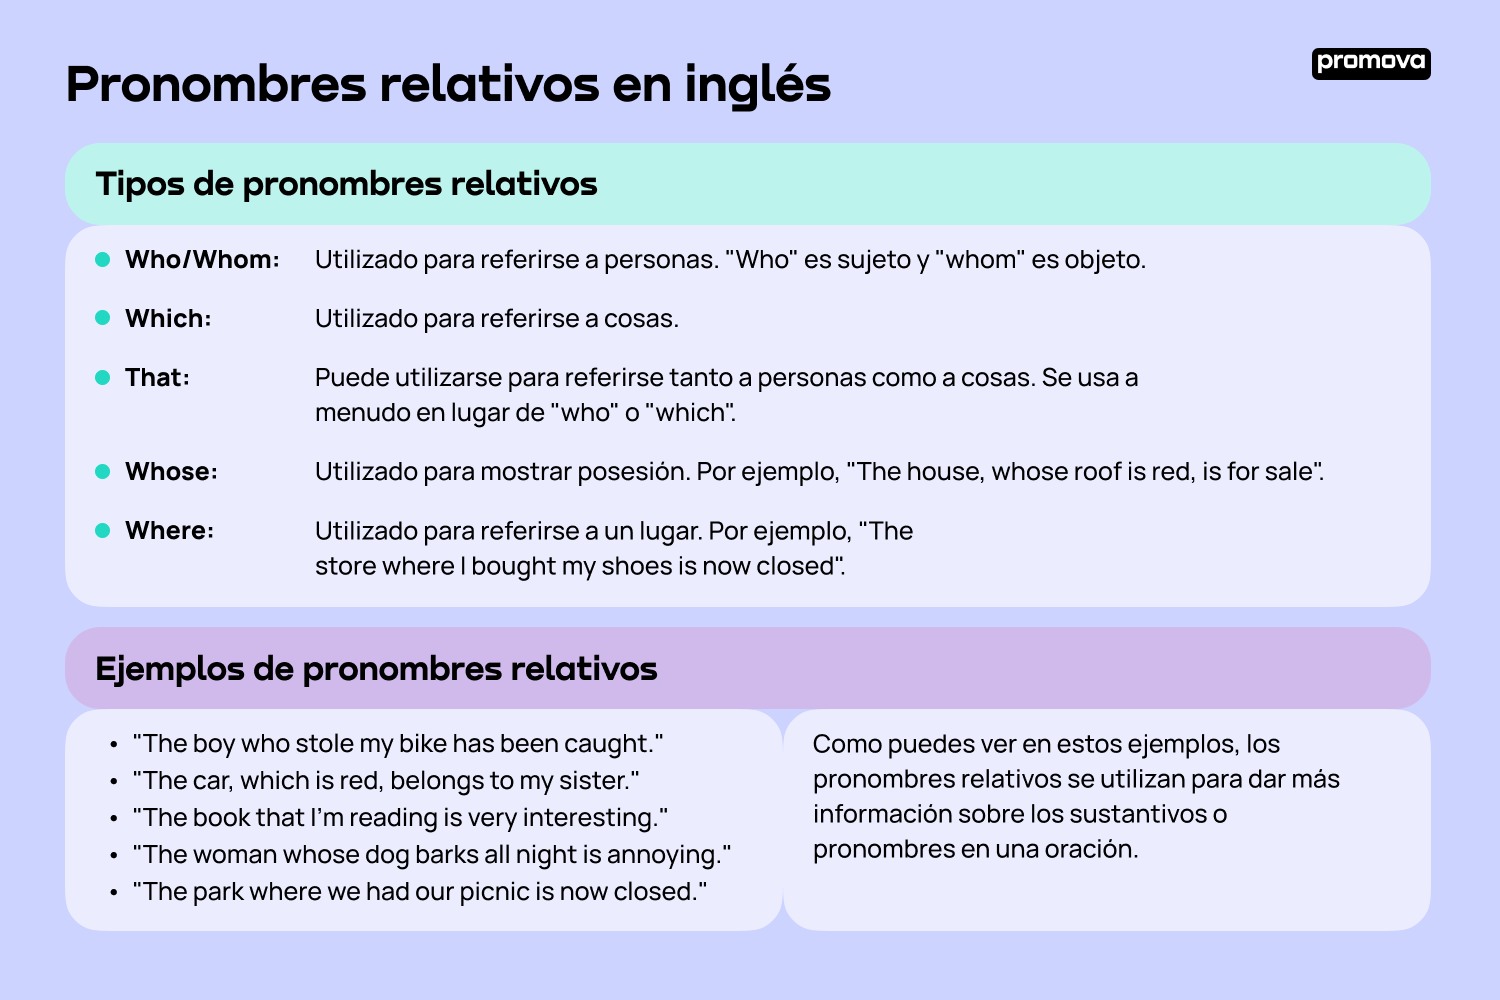 Aprende sobre los pronombres relativos en inglés y cómo utilizarlos